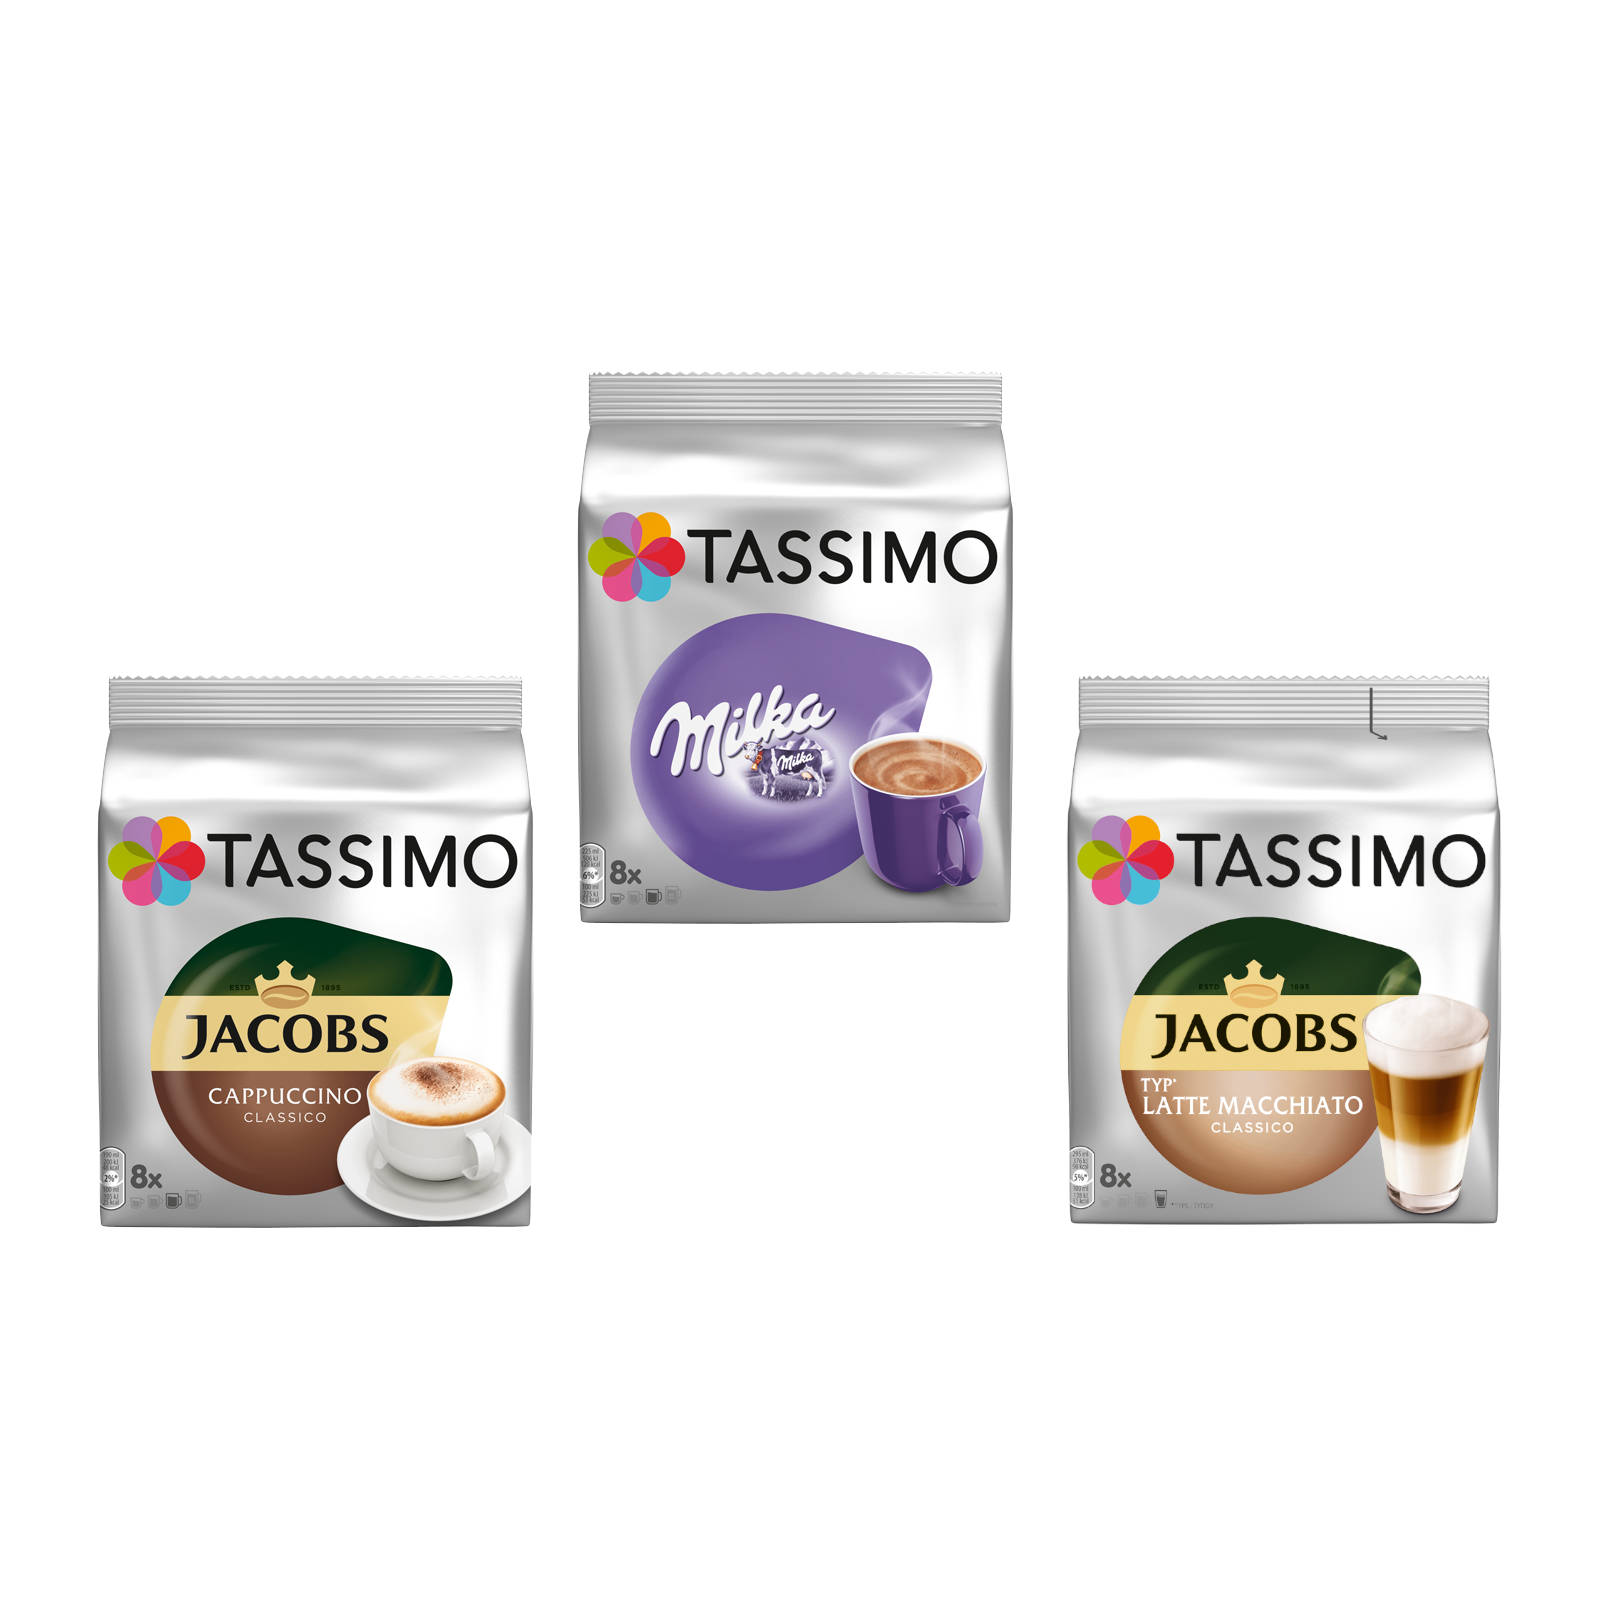 TASSIMO Creamy Kaffeekapseln Classico (Tassimo Milka Cappuccino Latte (T-Disc System)) Maschine Macchiato Collection